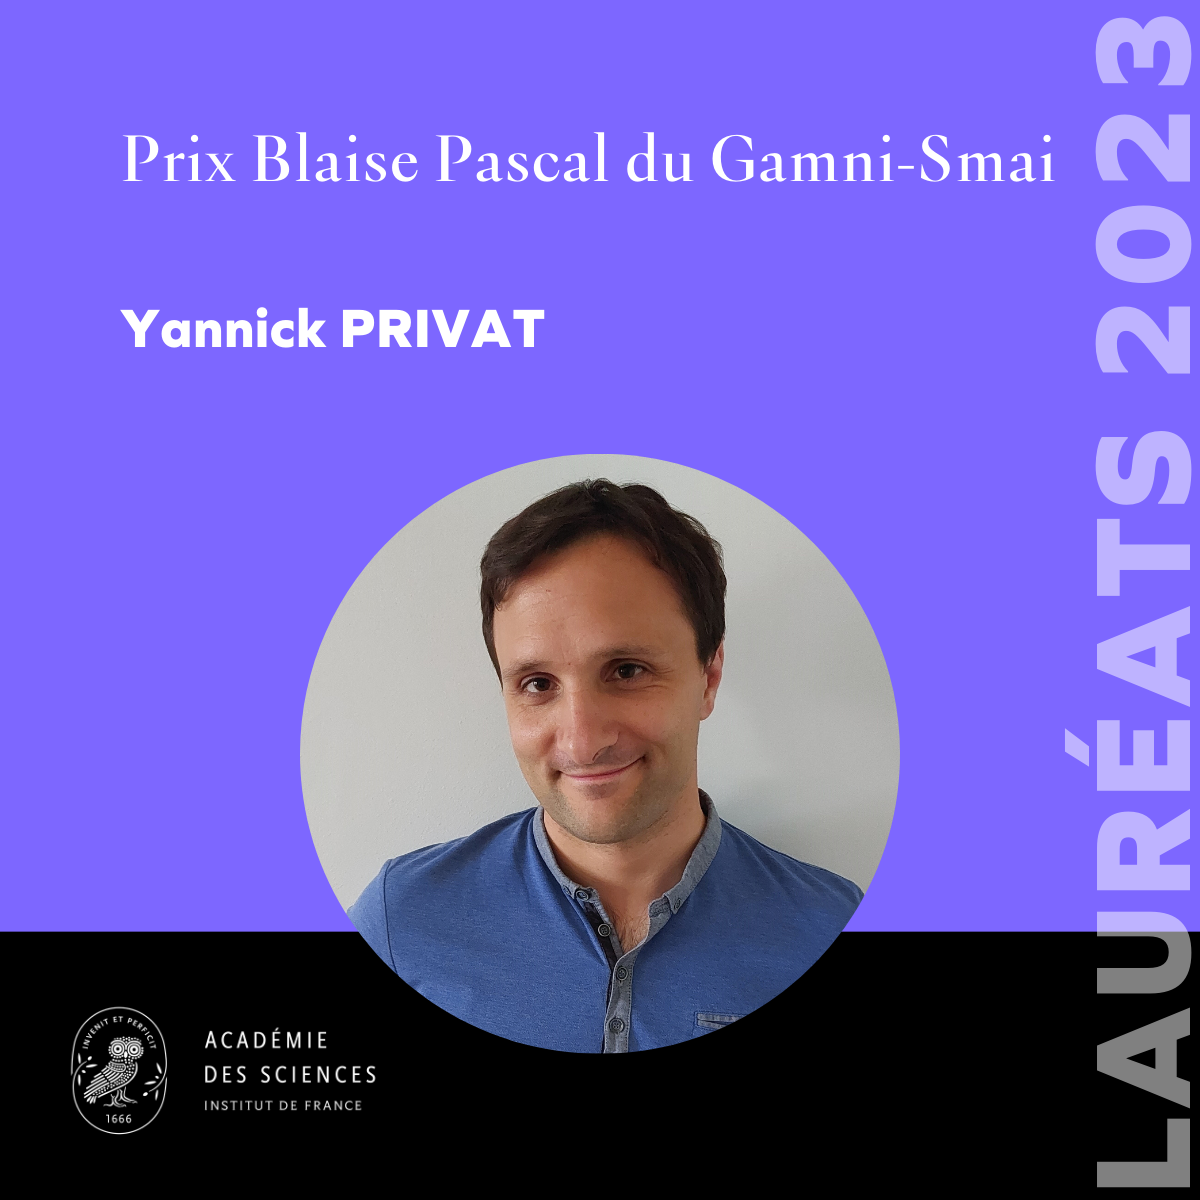 Yannick Privat